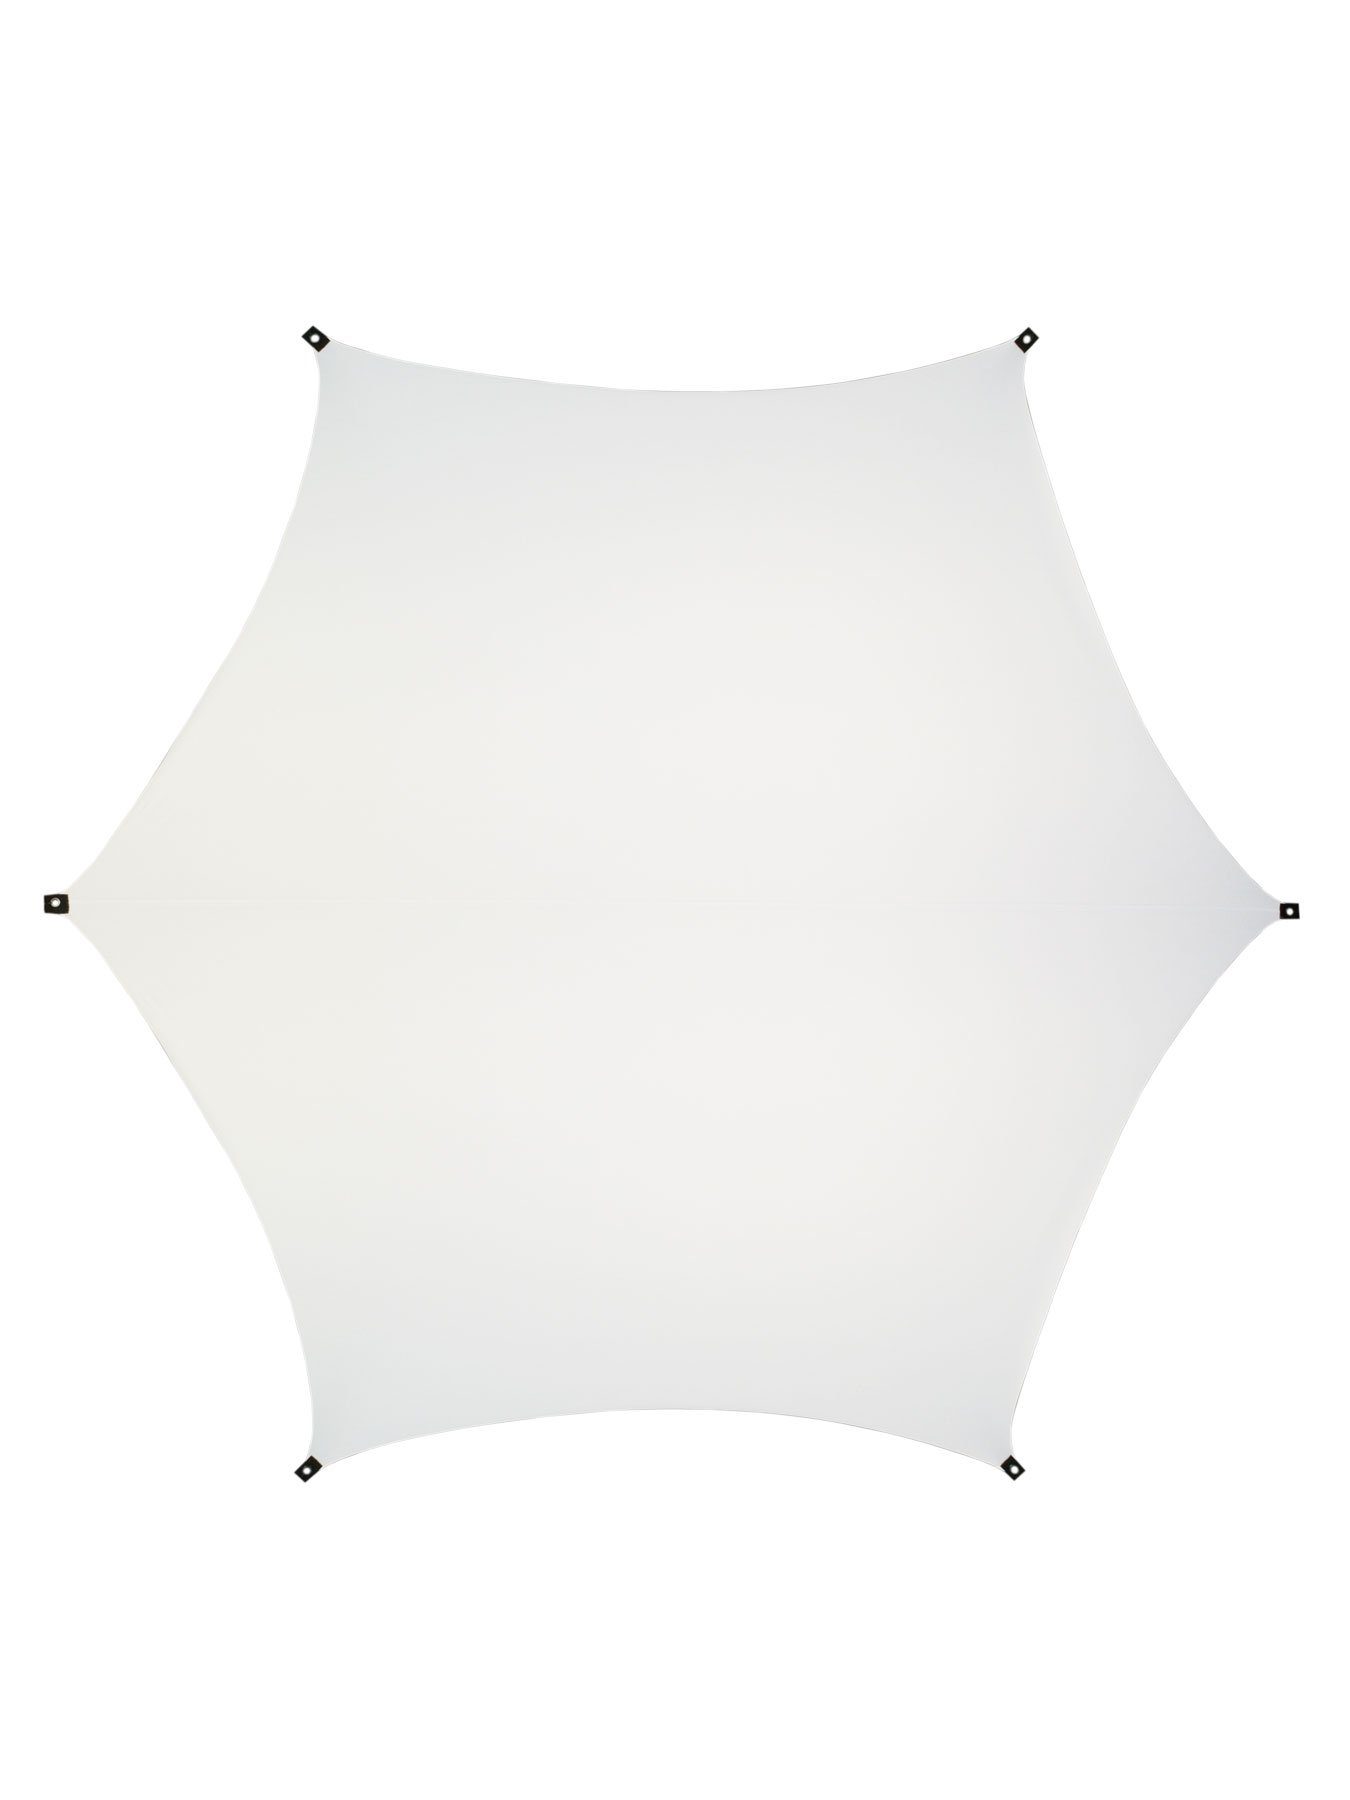 Wandteppich Schwarzlicht Segel Spandex "Crystal Clear Hexagon" Weiß, 4x4m, PSYWORK, UV-aktiv, leuchtet unter Schwarzlicht